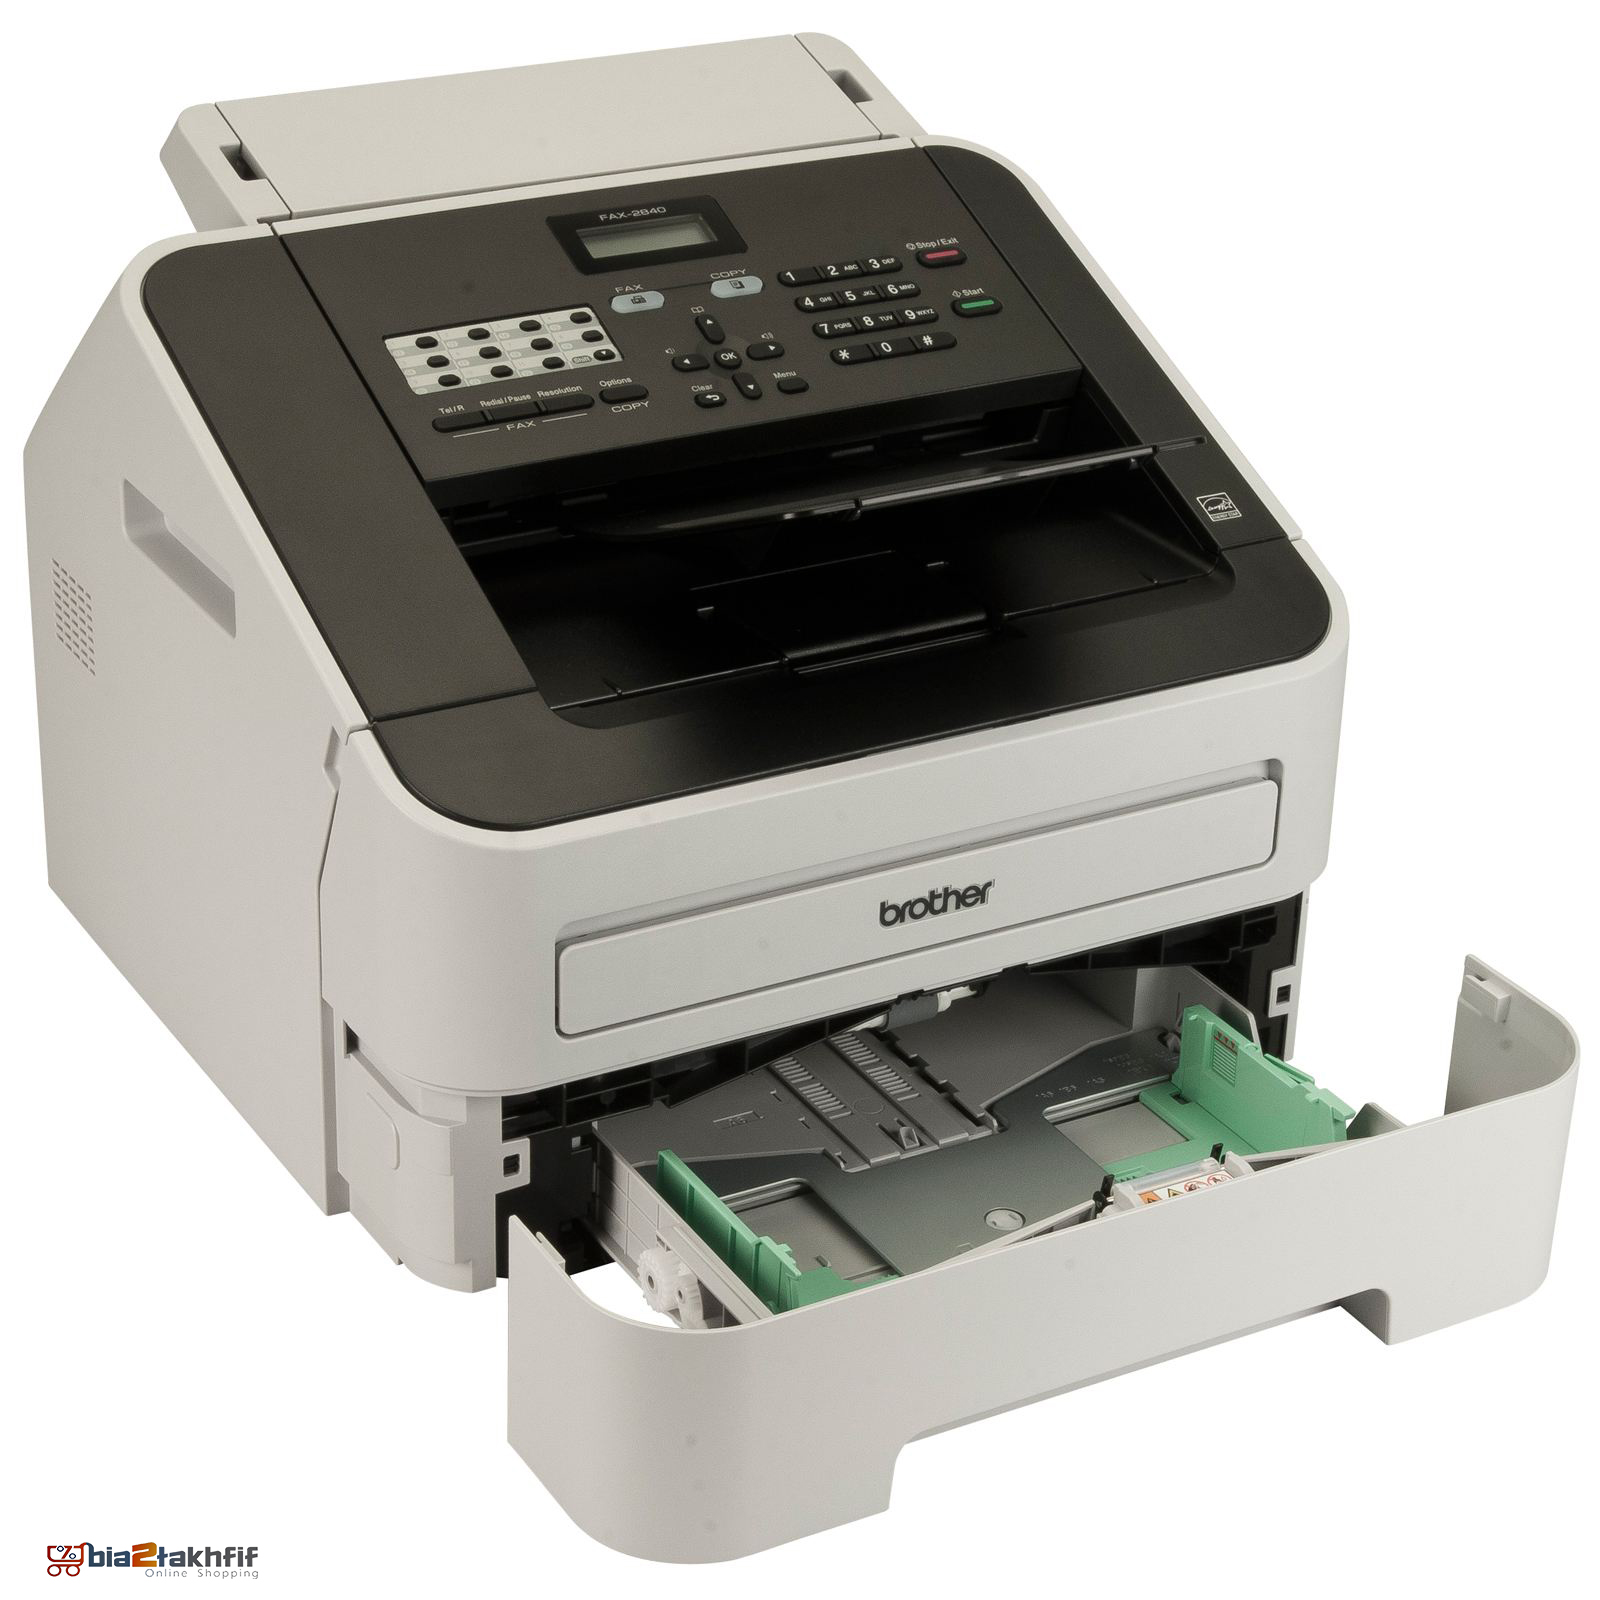 دستگاه فکس Fax-2840 برادر با ترکیب رنگ خاکستری و سفید، شبیه به مدل قبیلی طراحی‌شده است.bia2takhfif